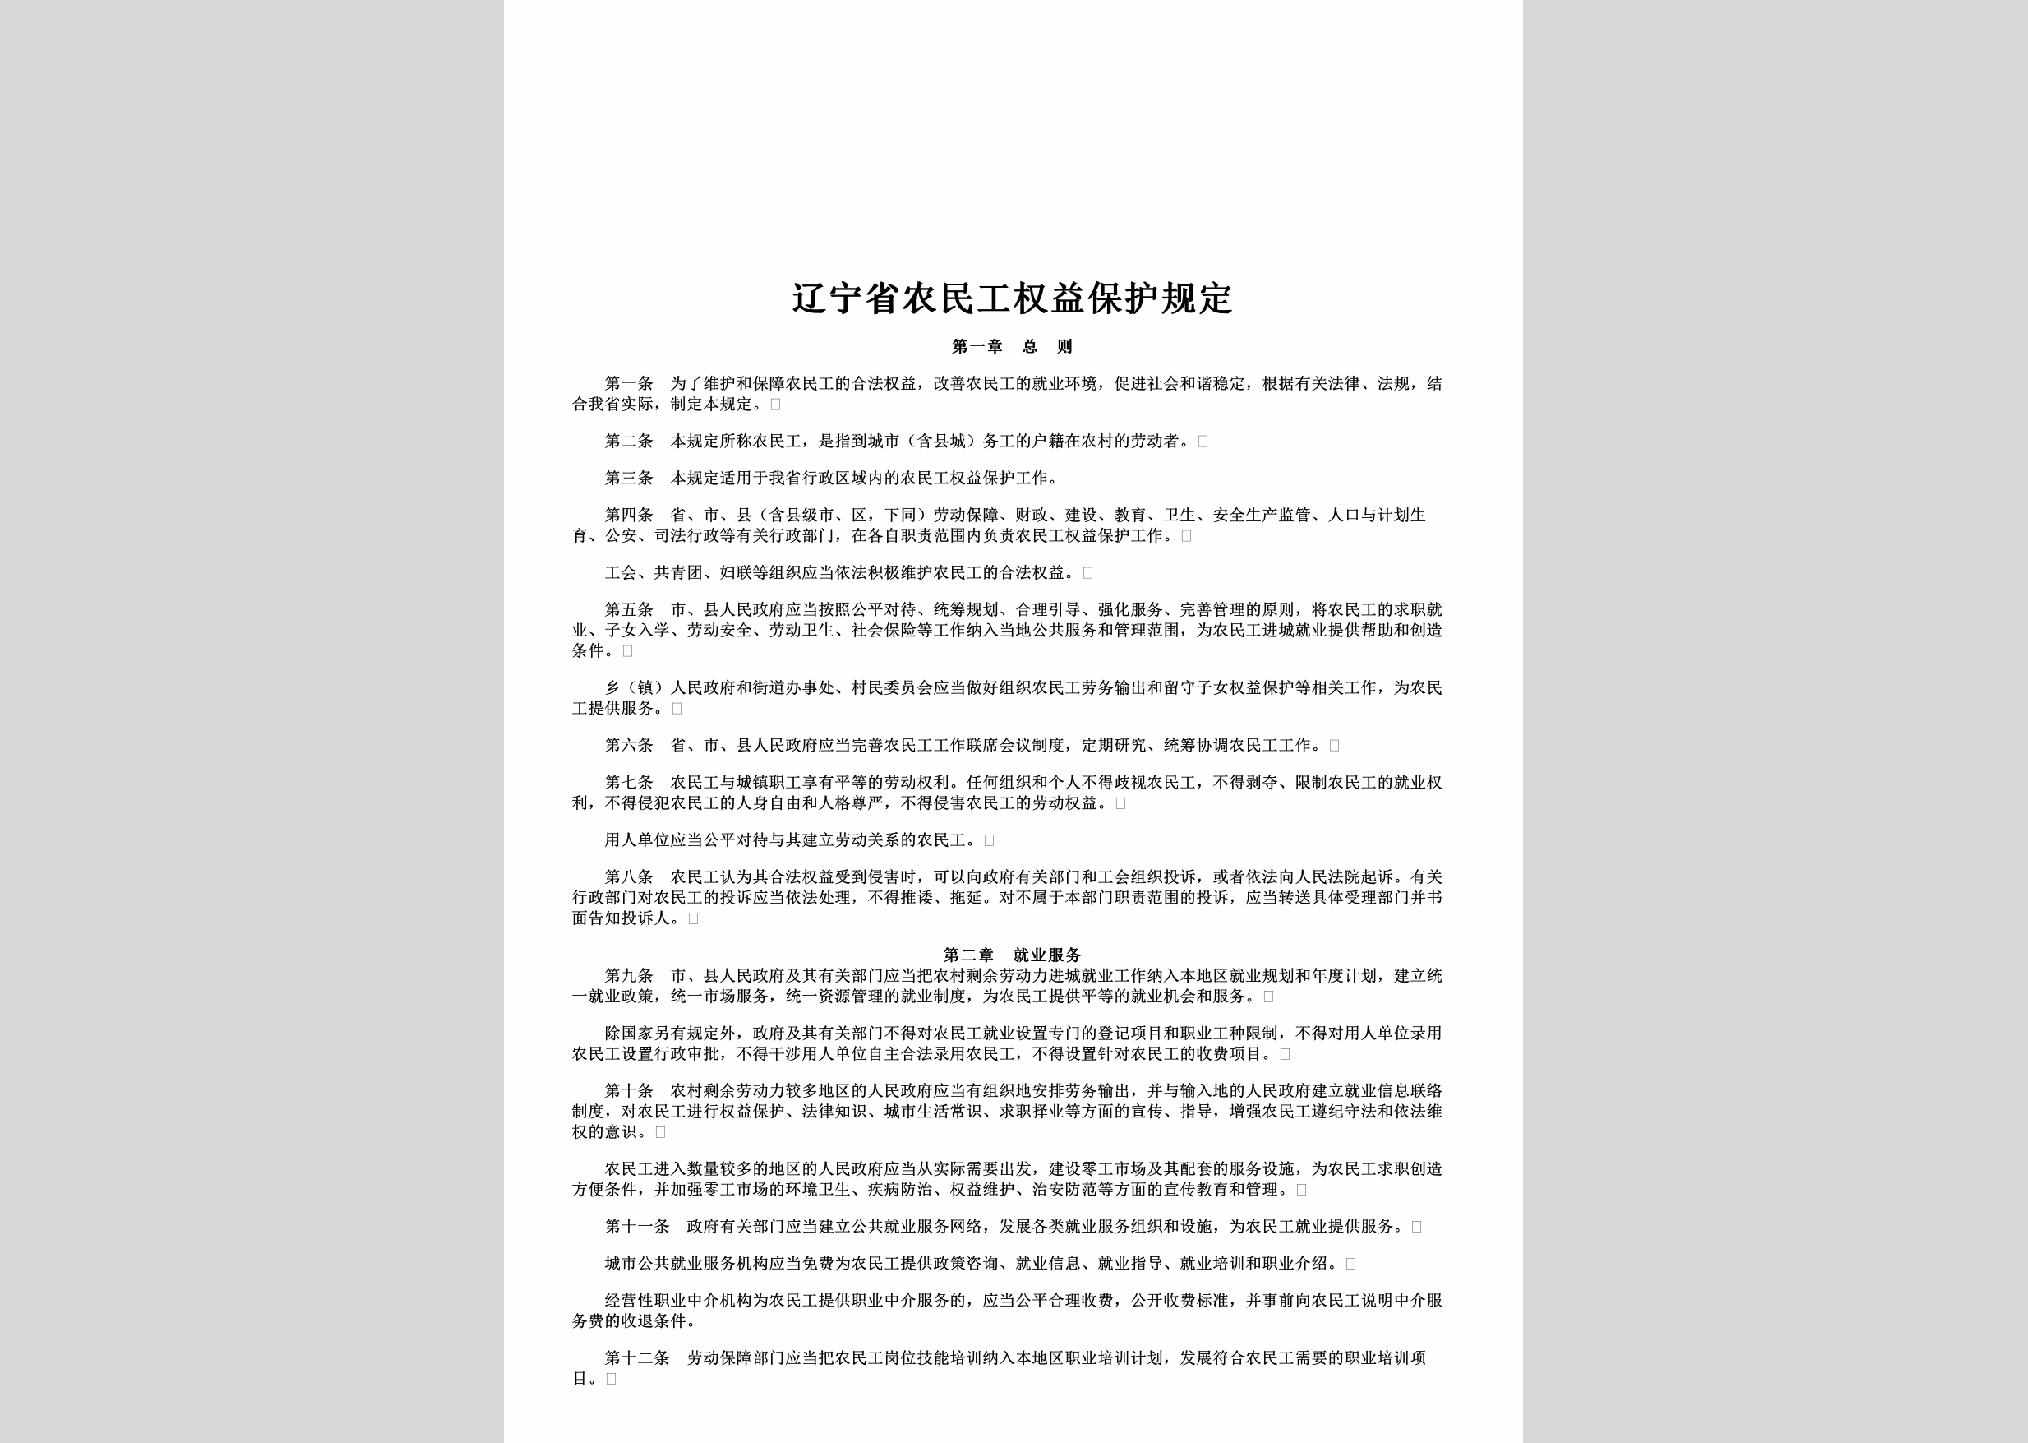 LN-NMGYQGD-2009：辽宁省农民工权益保护规定